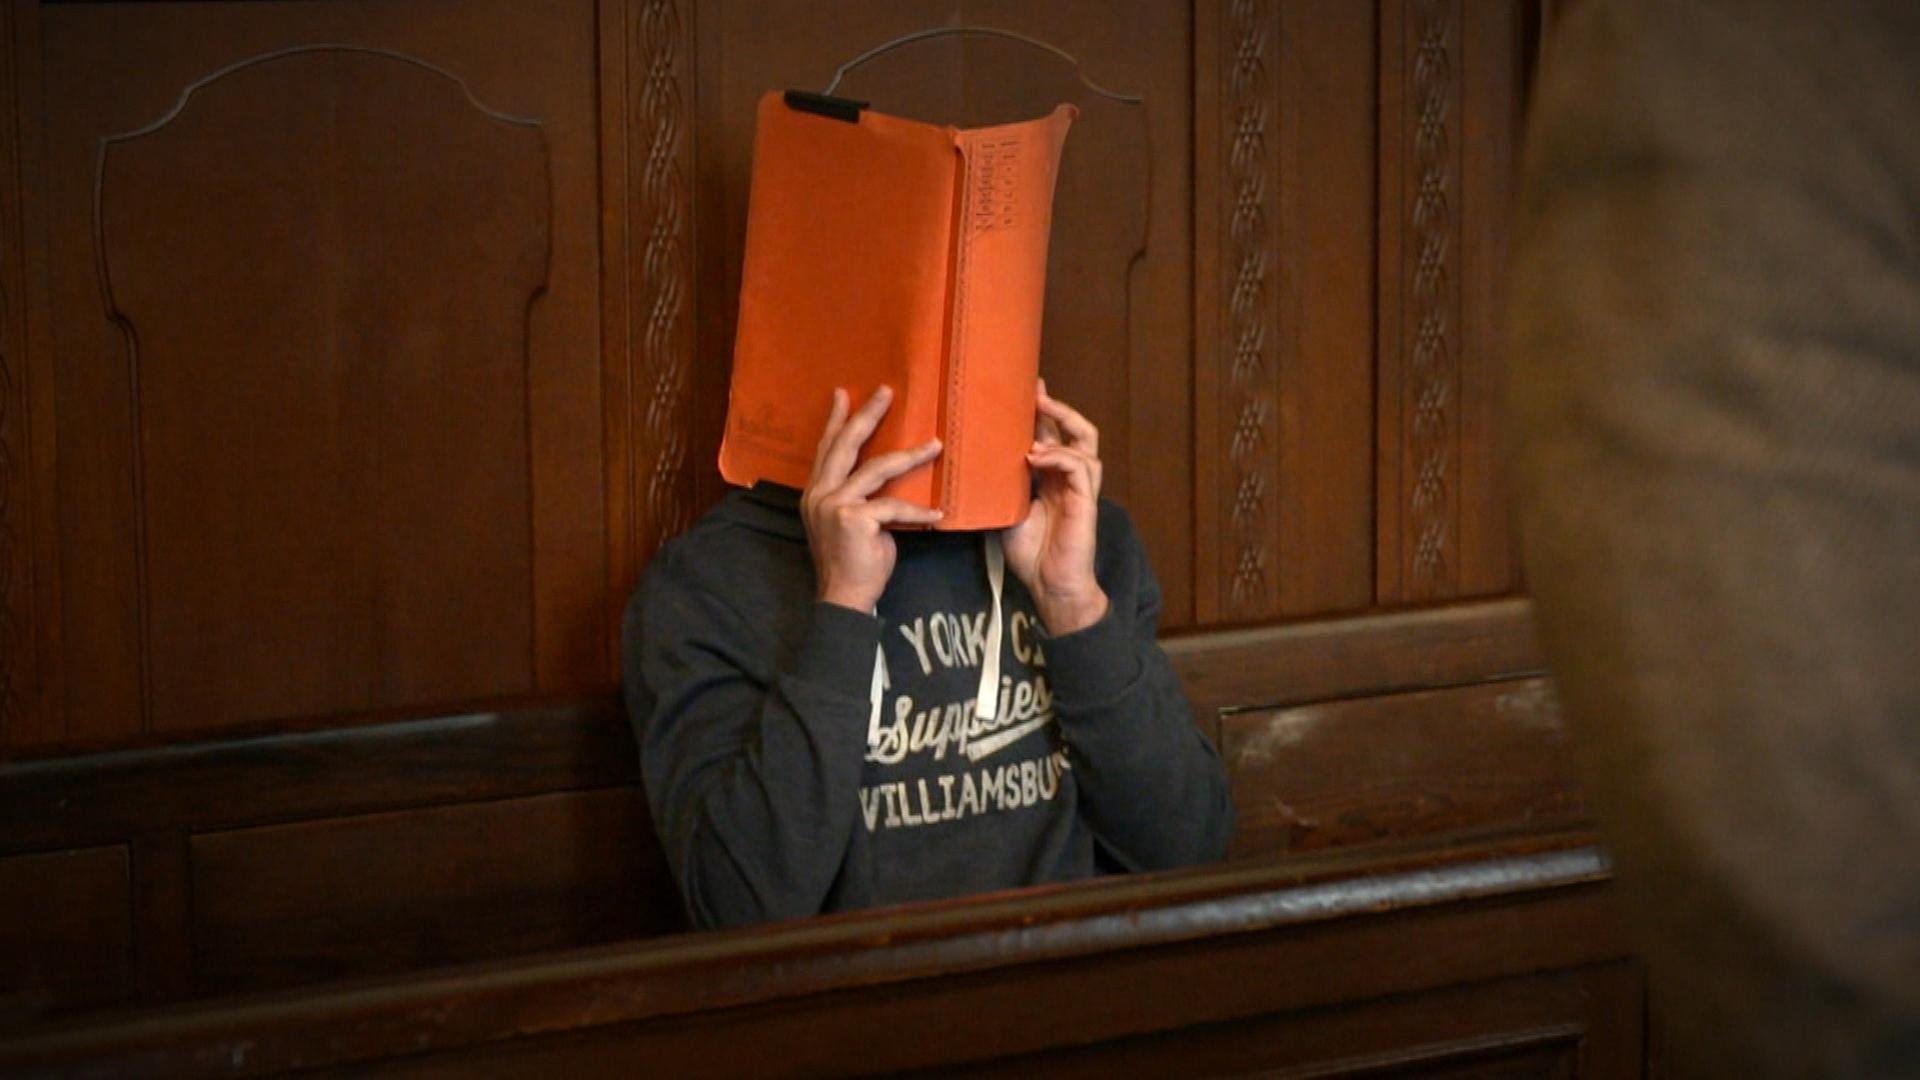 "Angeklagt! Mord oder Totschlag?": Ein Mann sitzt auf einer Bank in einem Gerichtssaal, vor sein Gesicht hält er eine orangefarbene Mappe.